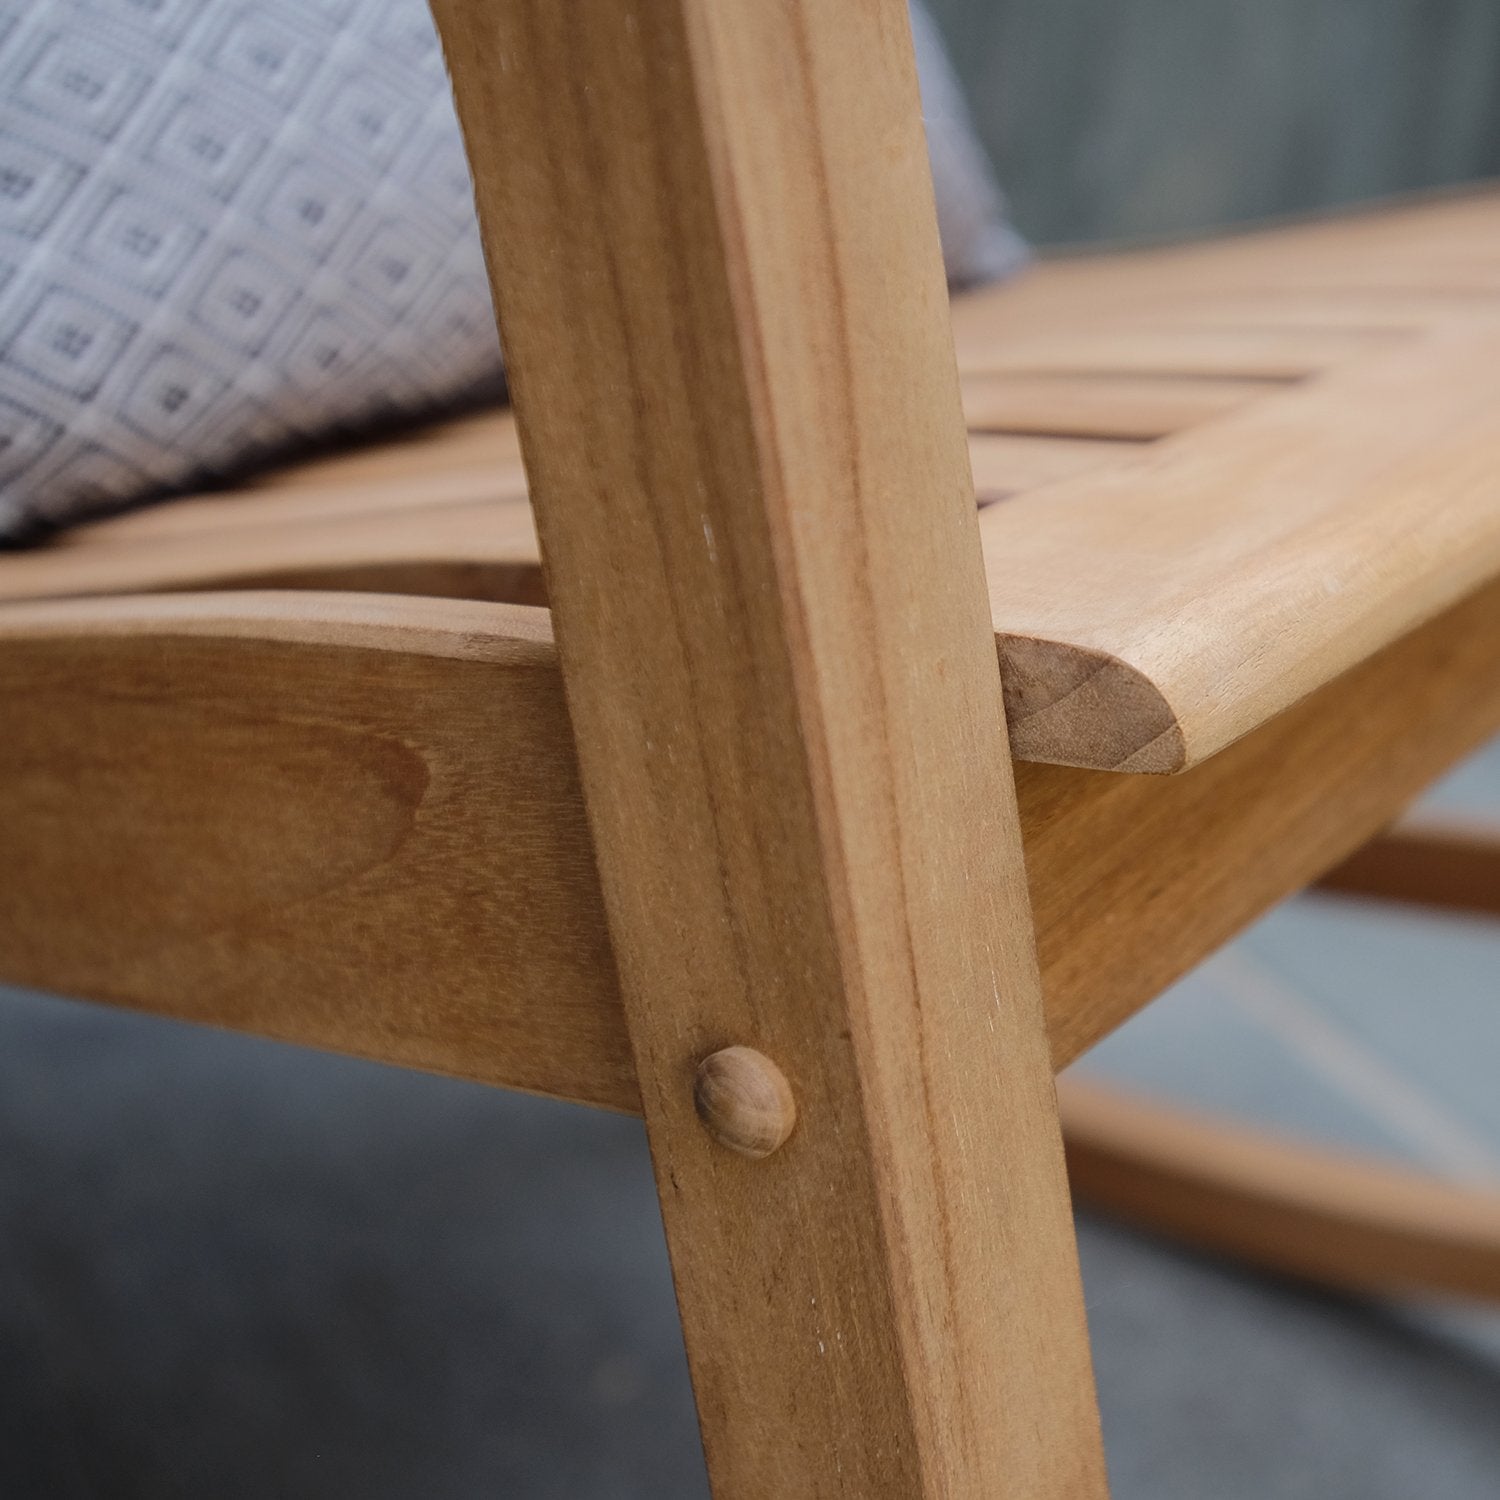 Vermont Teak Wood Porch Rocking Chair - Cambridge Casual [DETAILS]